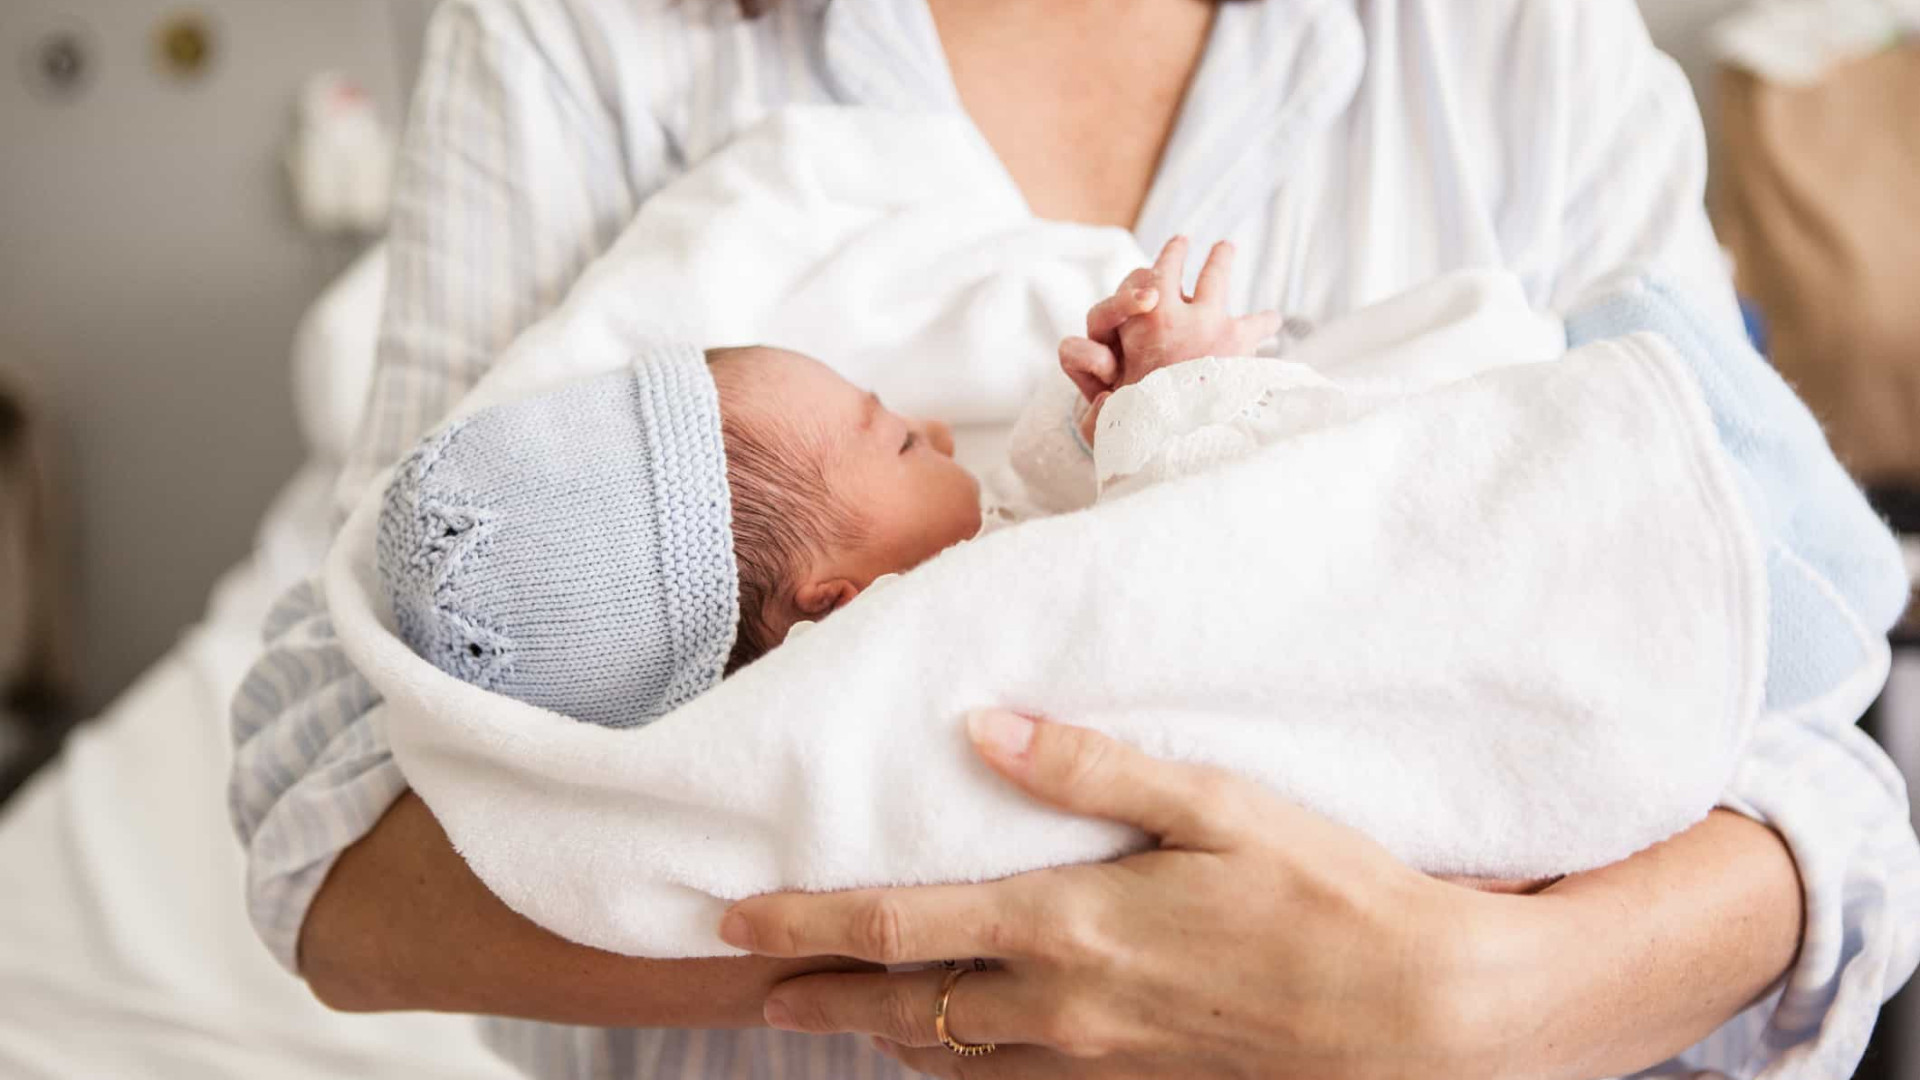 Anestesia geral durante cesarianas aumenta risco de depressão pós-parto